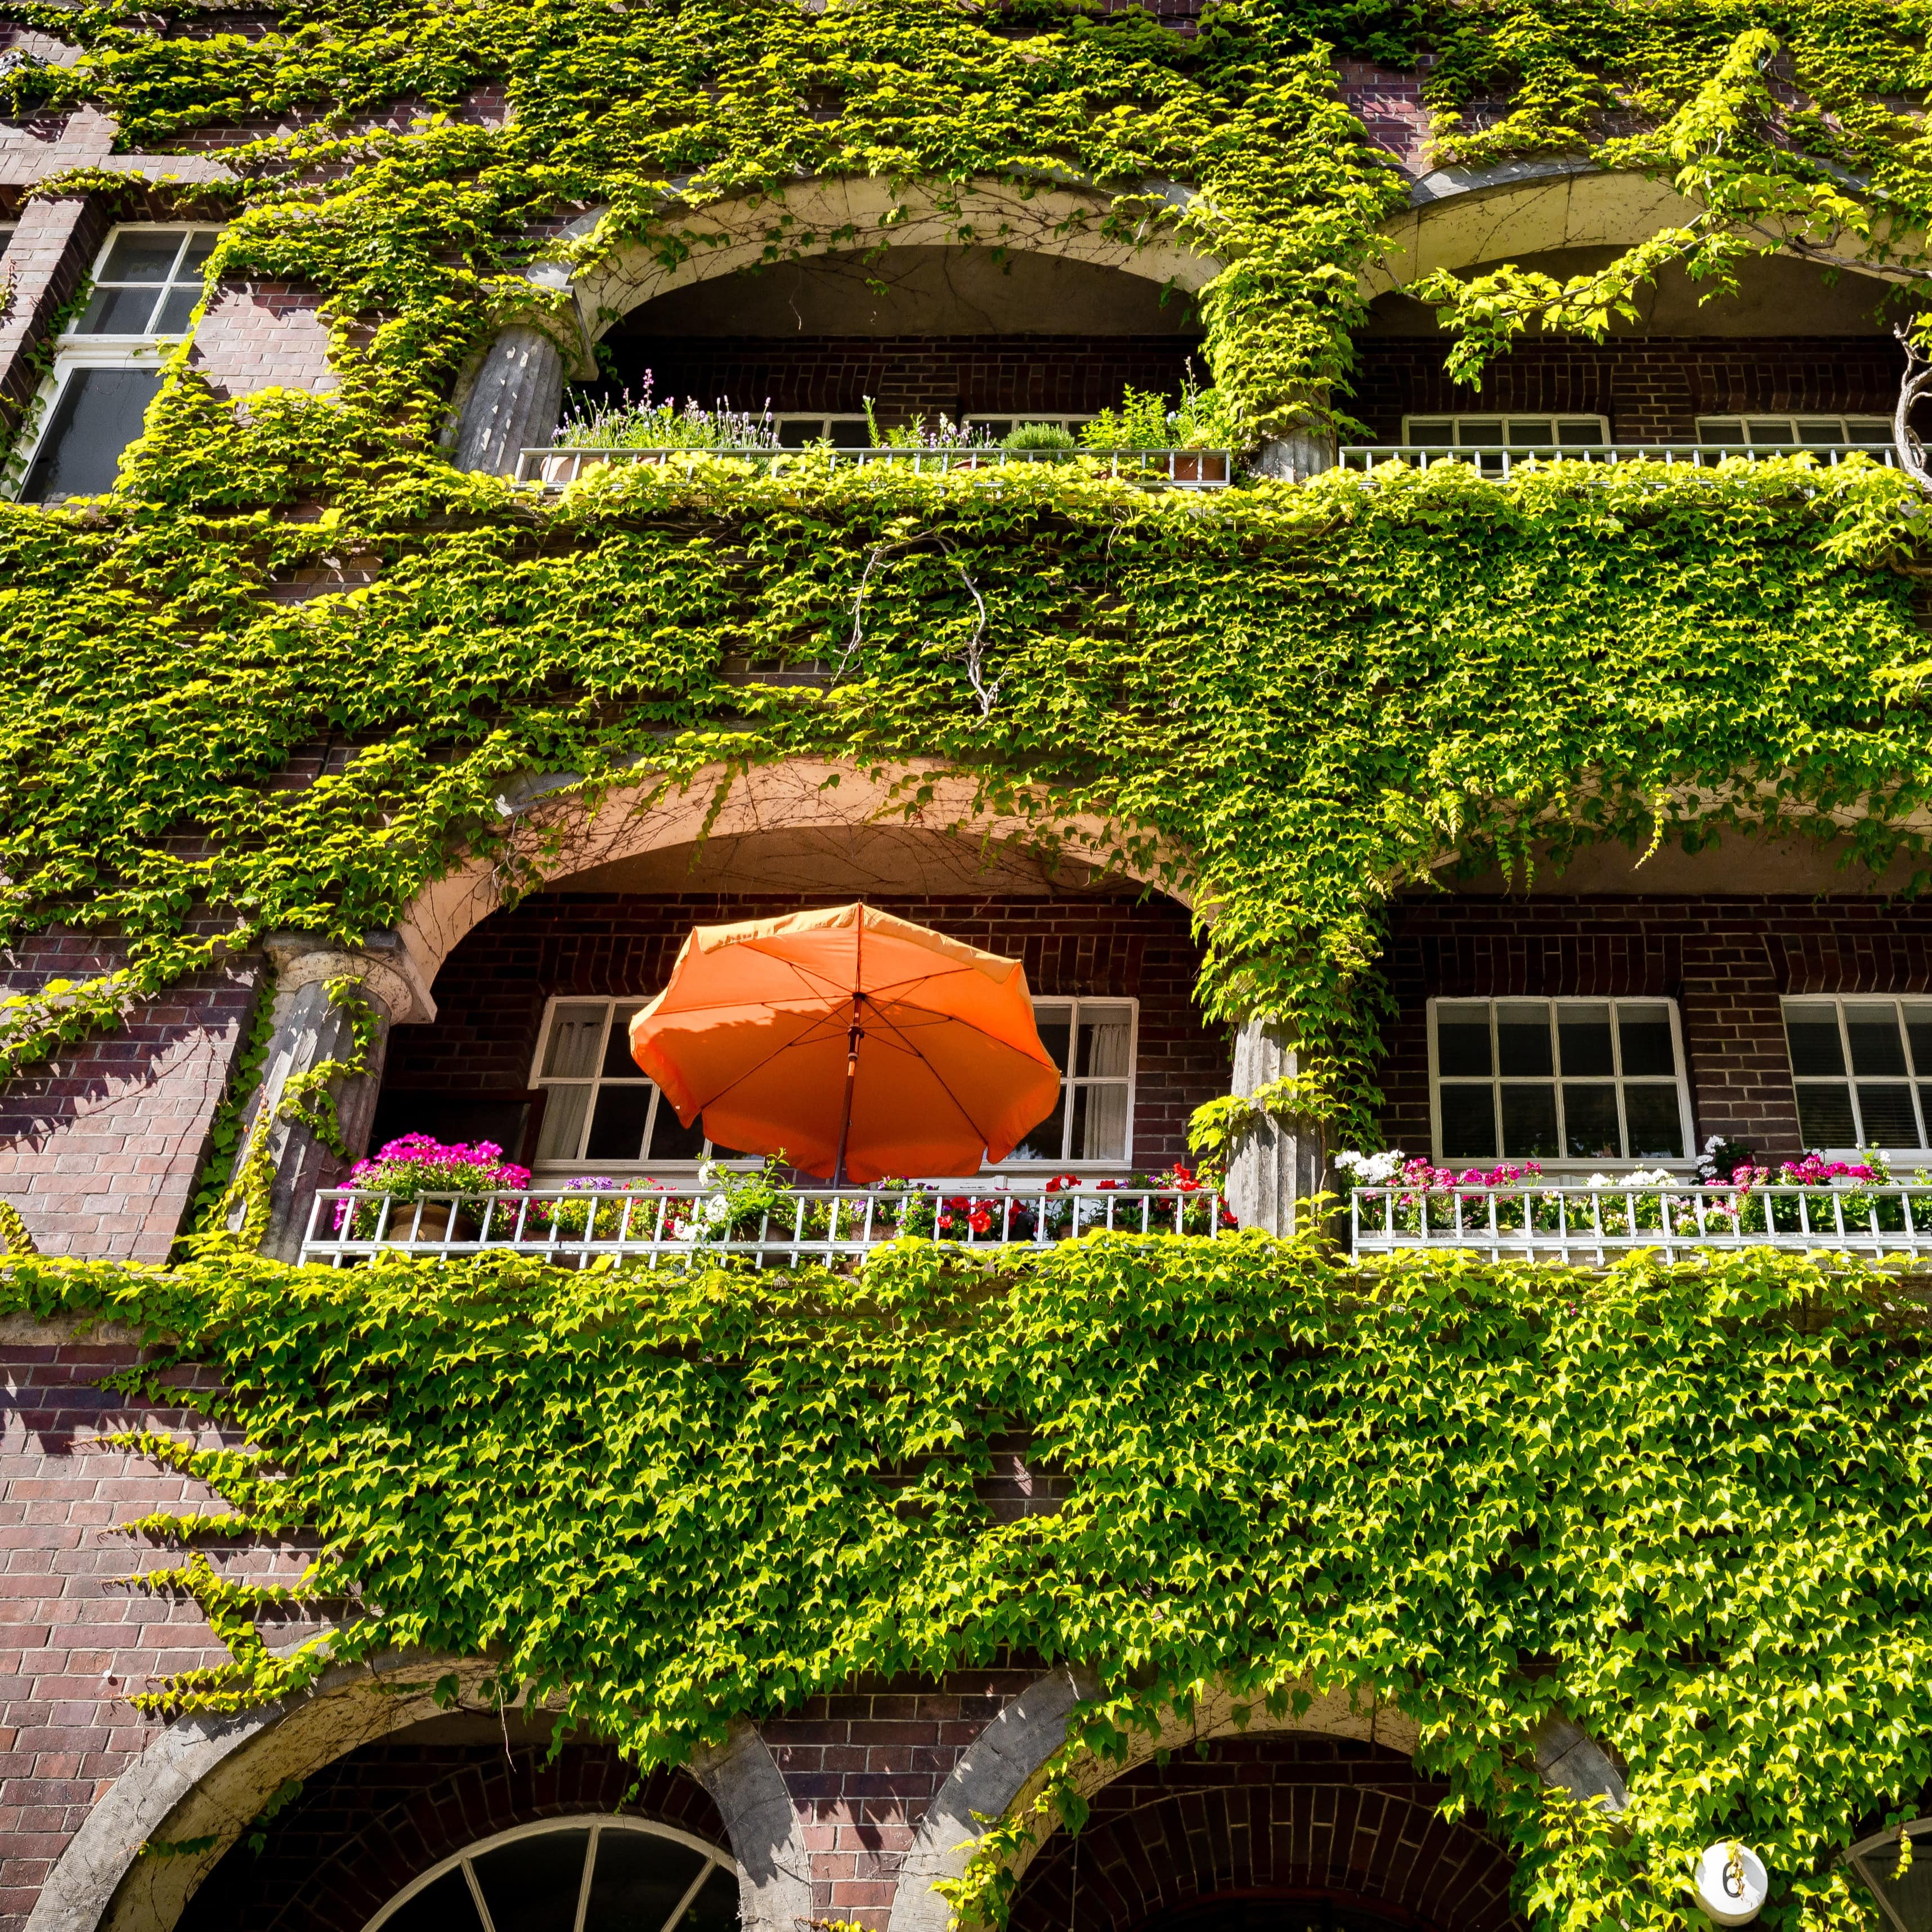 Blick von unten auf ein Wohnhaus aus rotem Backstein, das mit Weinranken überwachsen ist. Auf einem Balkon ein Sonnenschirm.